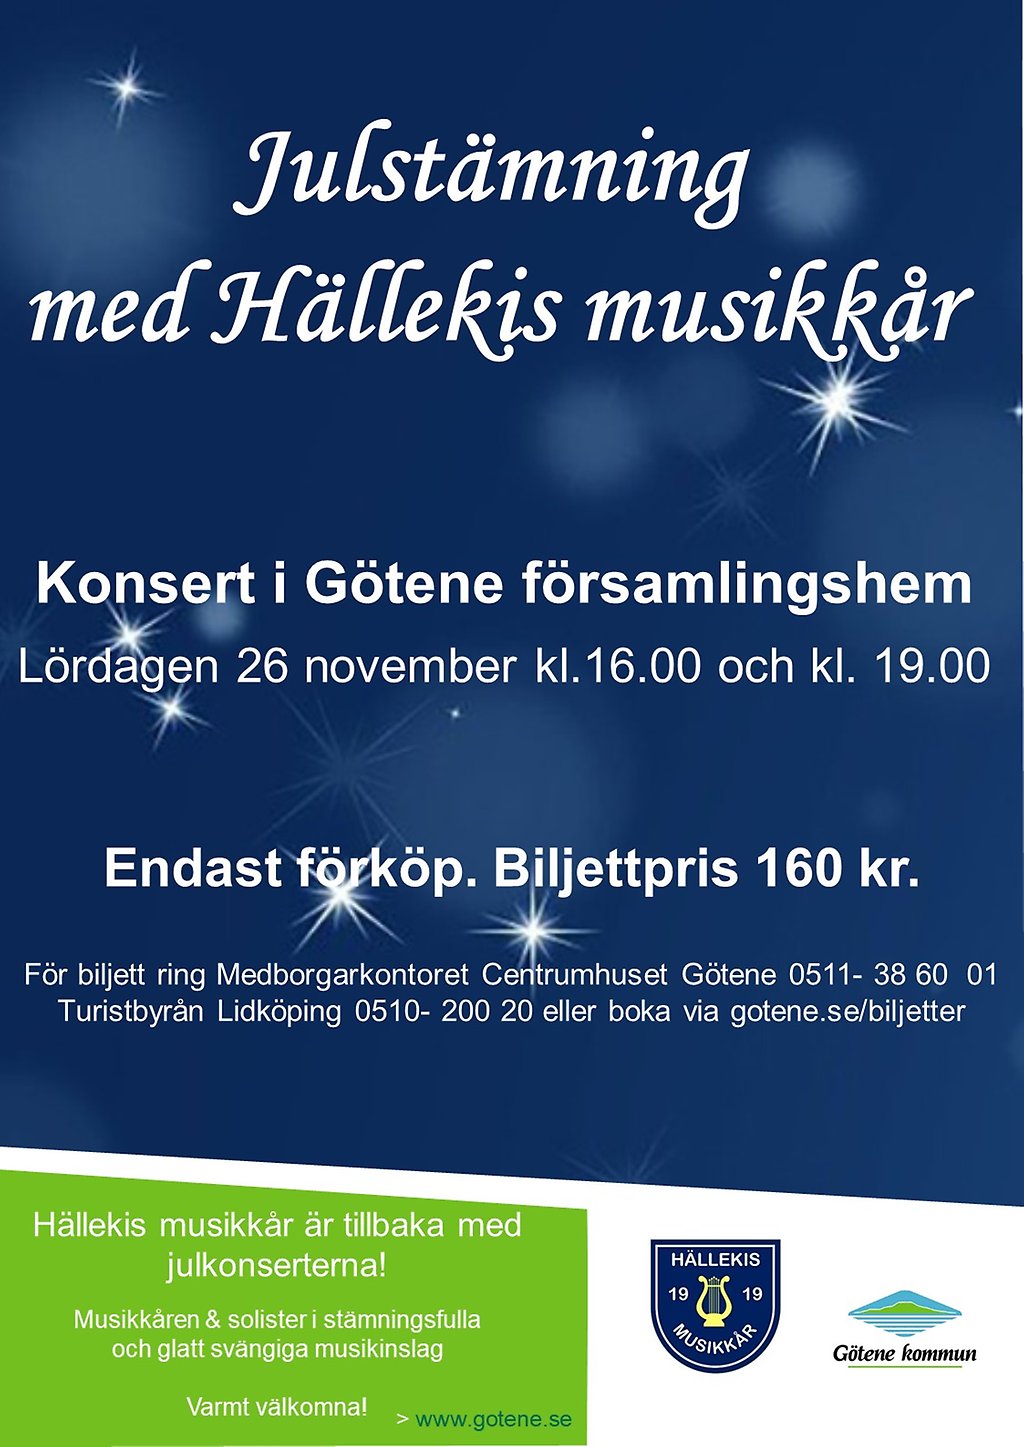 Affisch med text "Julstämning med Hällekis musikkår, lördagen den 26 november klockan 16.00 och 19.00".